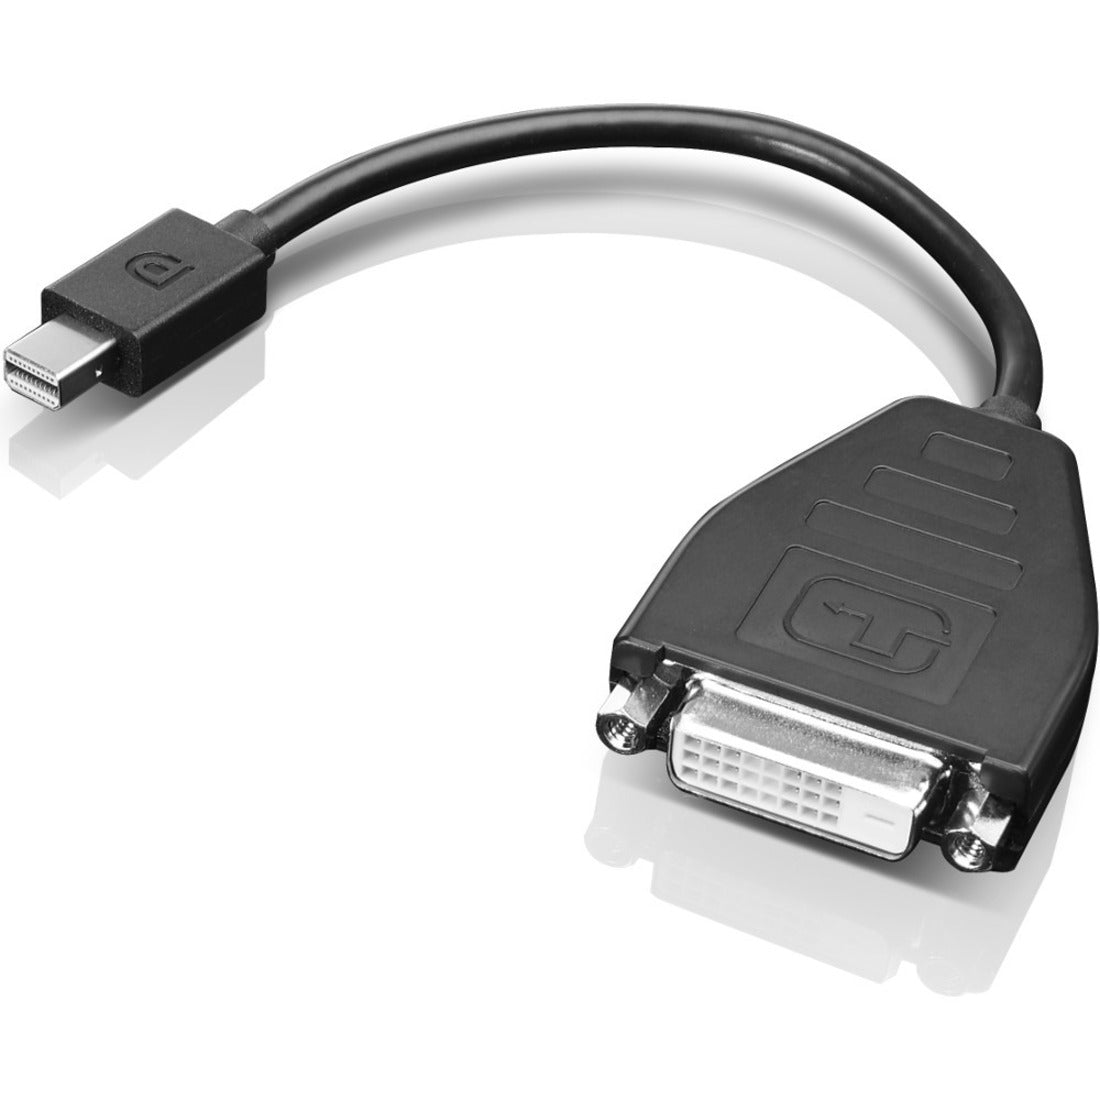 Lenovo 0B47090 Adattatore Mini-DisplayPort a DVI-D (Single Link) Collega i Tuoi Dispositivi con Facilità